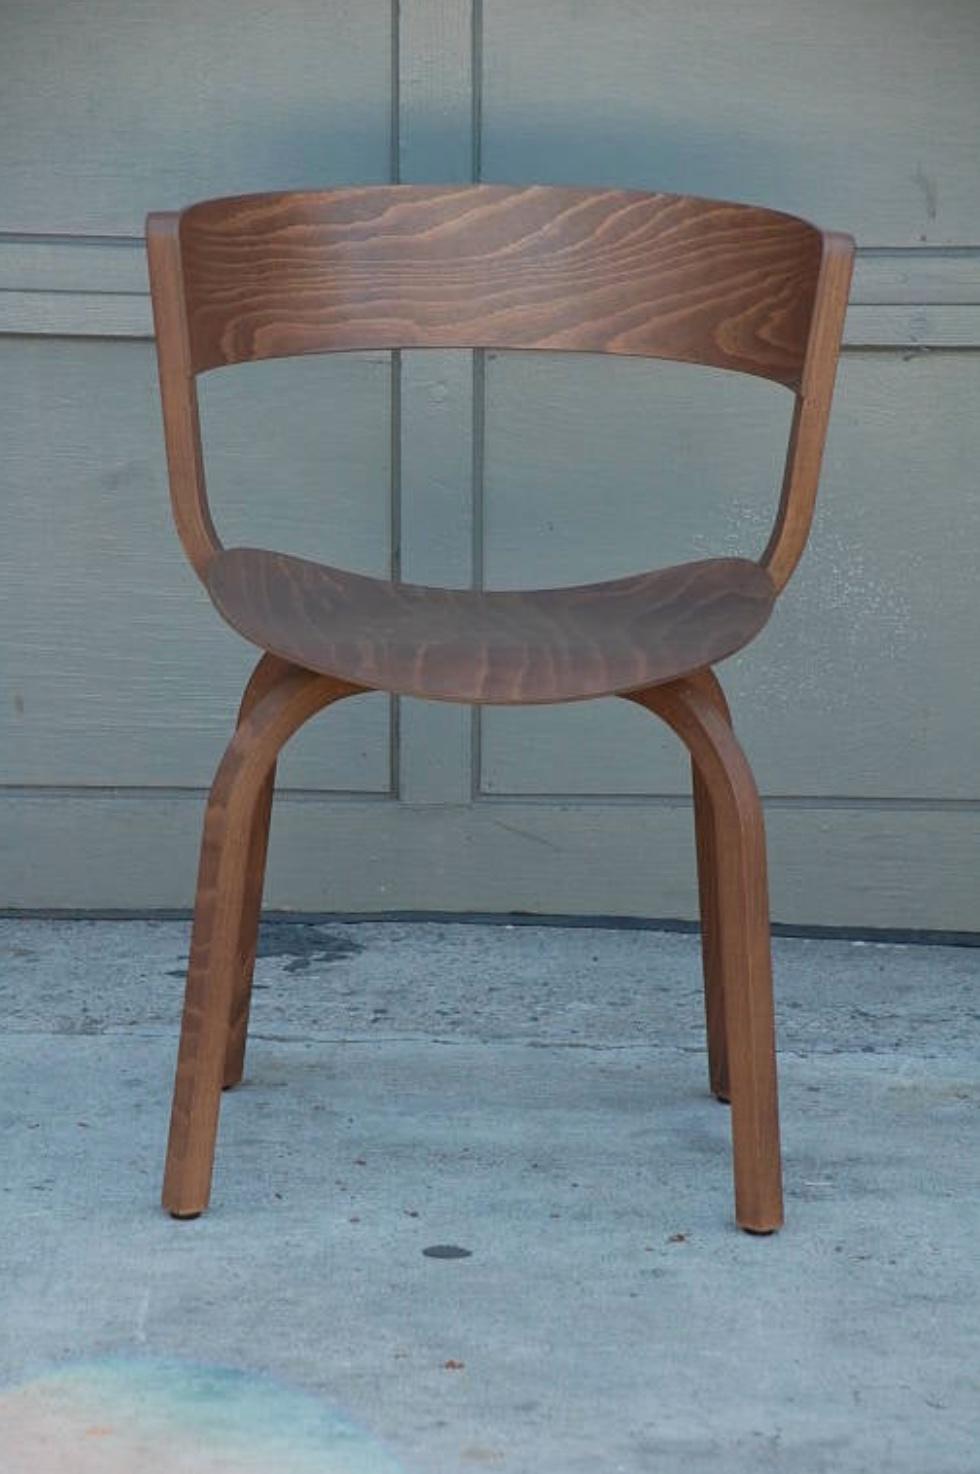 Ein Paar Stühle 404 F von Stefan Diez für Thonet. Original Labels.

Stefan Diez, geboren 1971 in Freising (Deutschland). Nach einem Architekturstudium und einer Ausbildung zum Schreiner studierte er Industriedesign an der Akademie der Bildenden